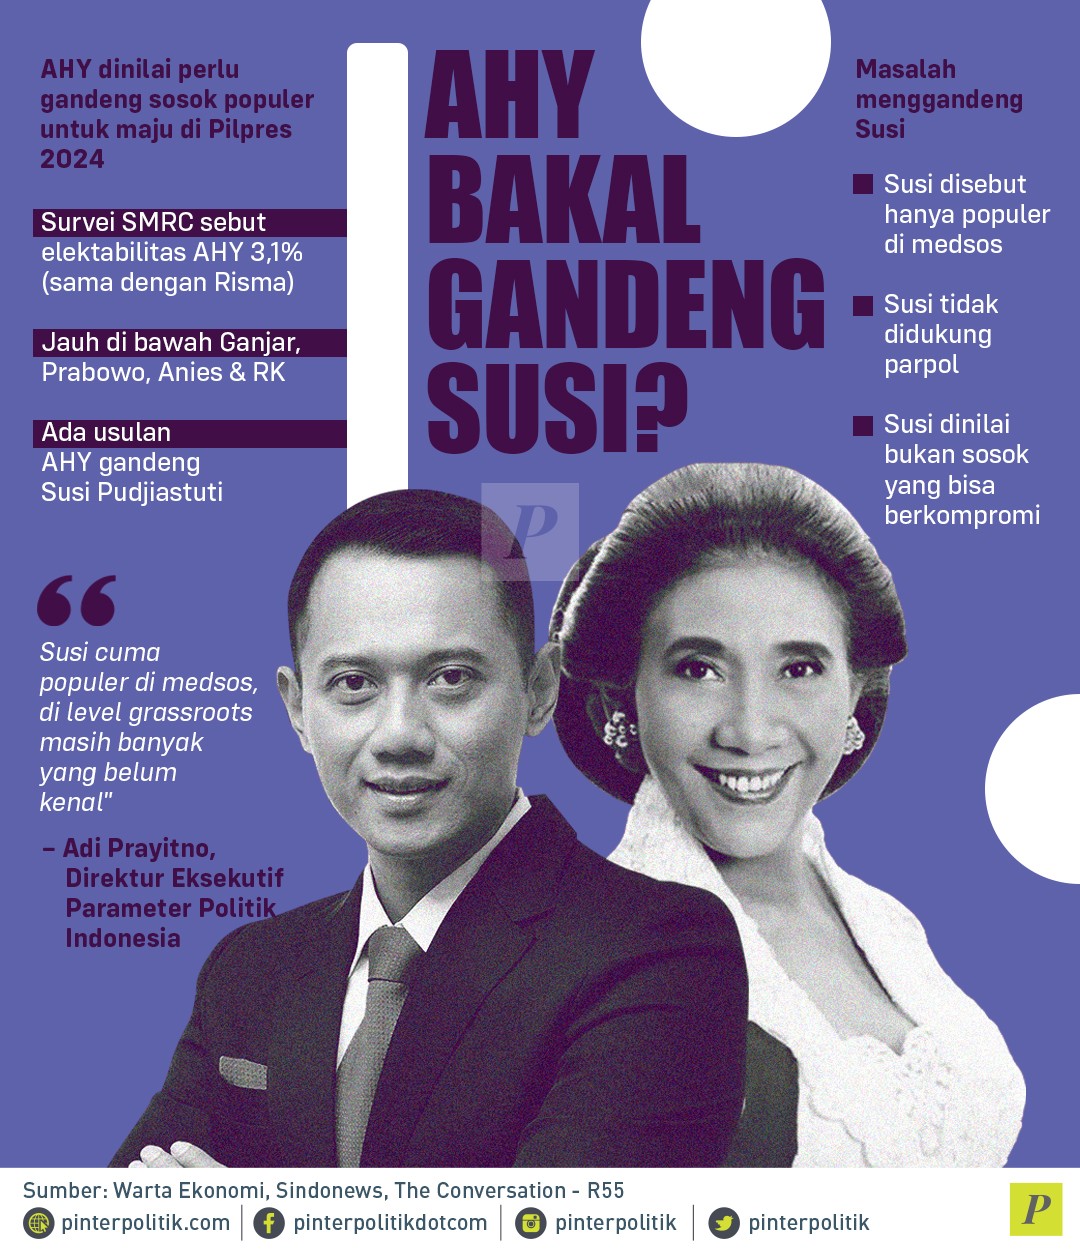 Anak SBY, Agus Harimurti Yudhoyono (AHY) Diusulkan Menggandeng Susi Pudjiastuti Maju Pilpres 2024. Berikut Faktanya!